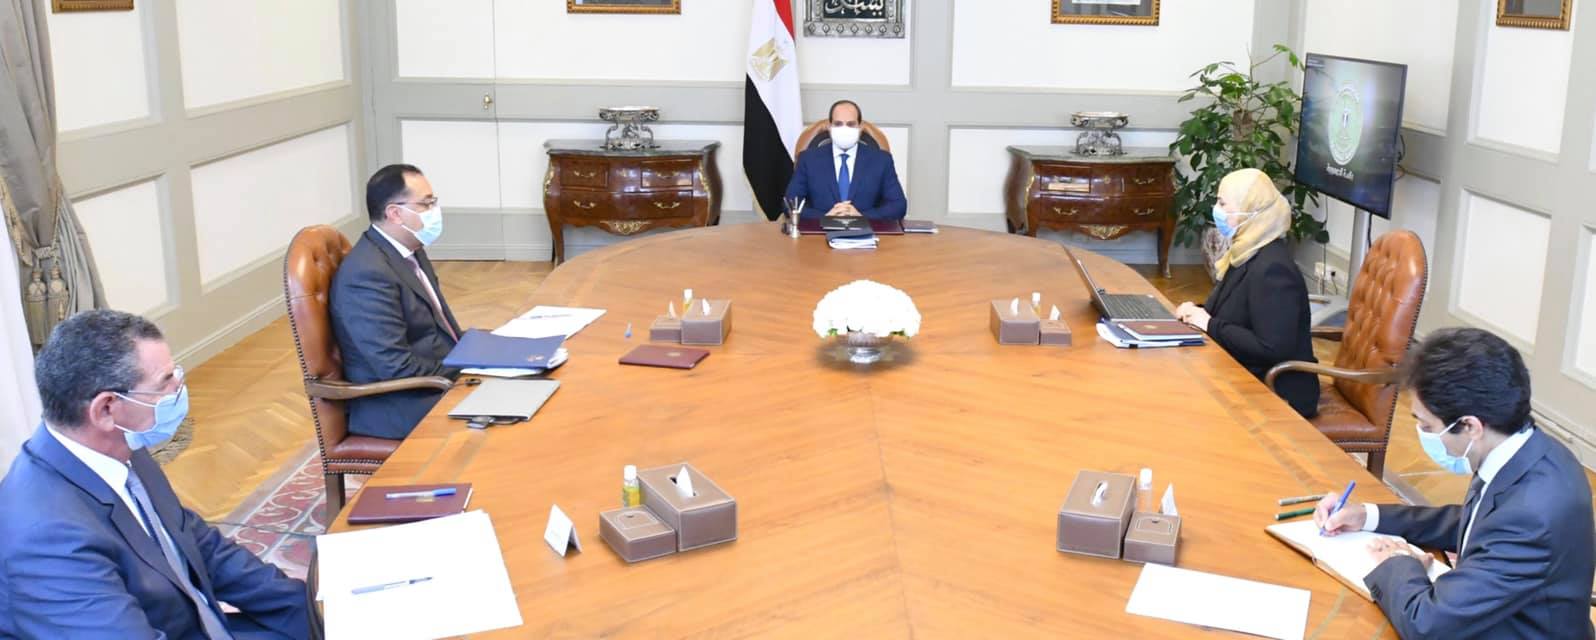   الرئيس السيسى يتابع برامج وزارة التضامن الاجتماعي في إطار مبادرات الحماية الاجتماعية